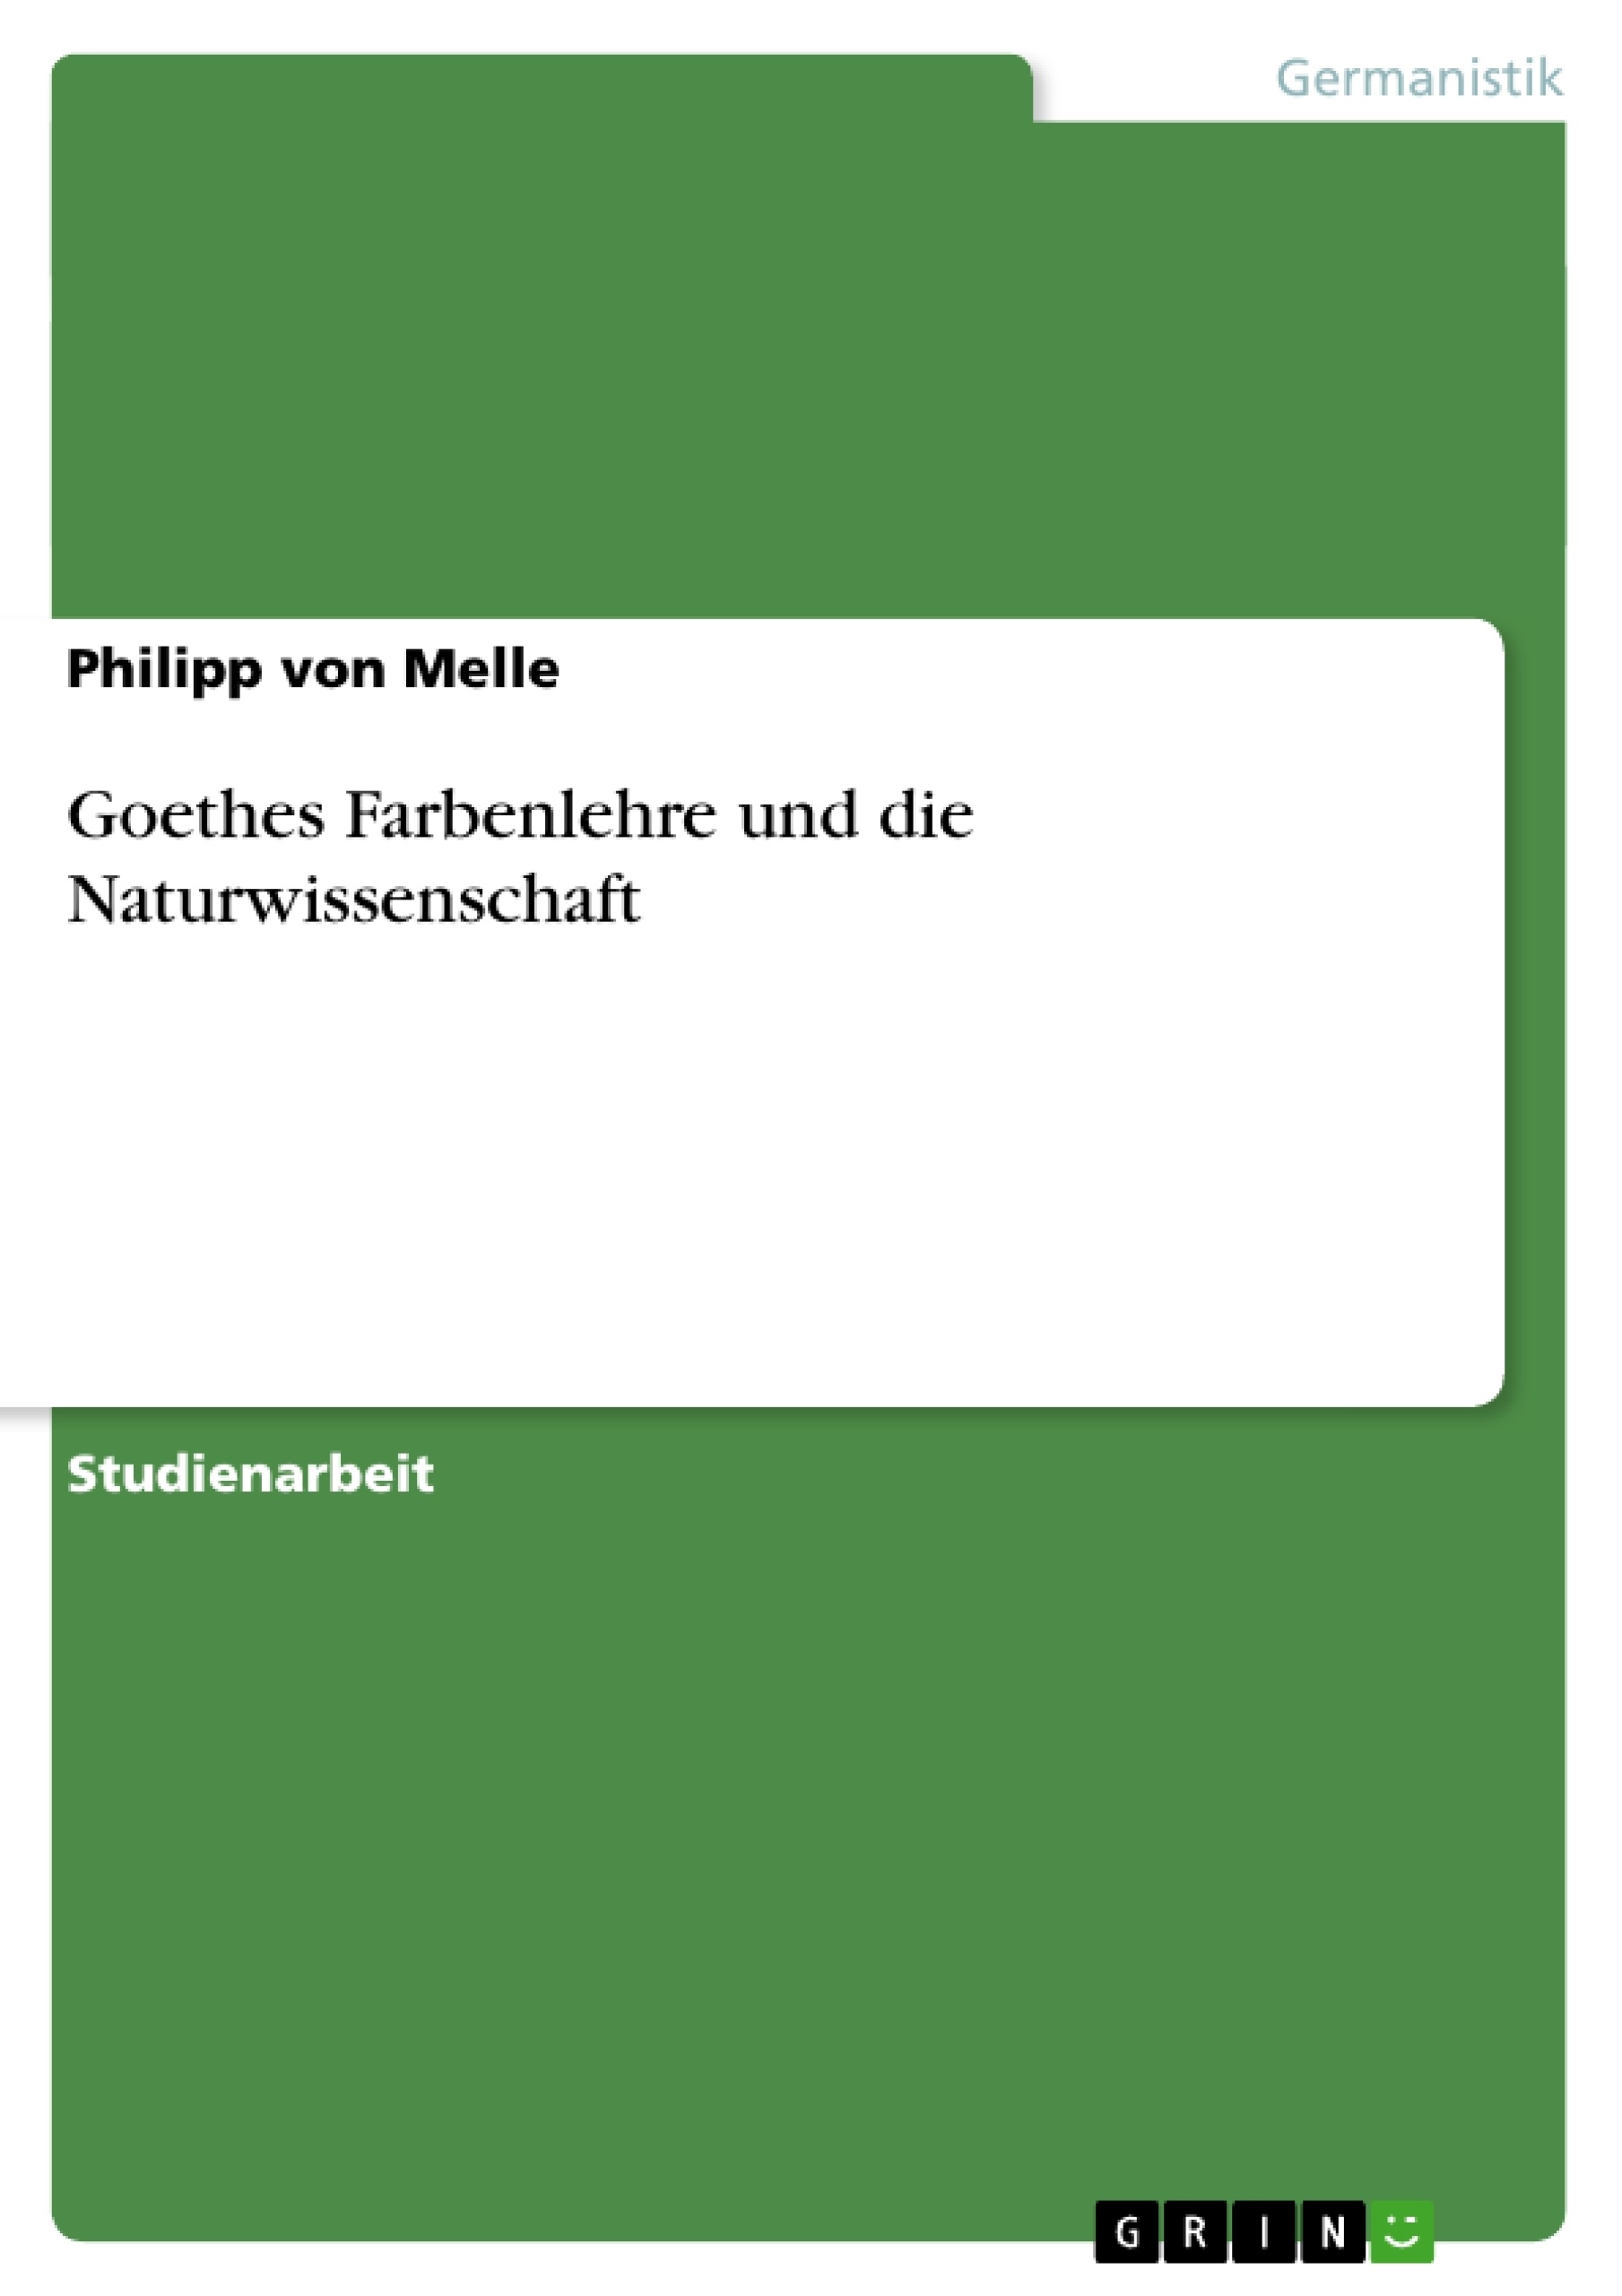 Title: Goethes Farbenlehre und die Naturwissenschaft